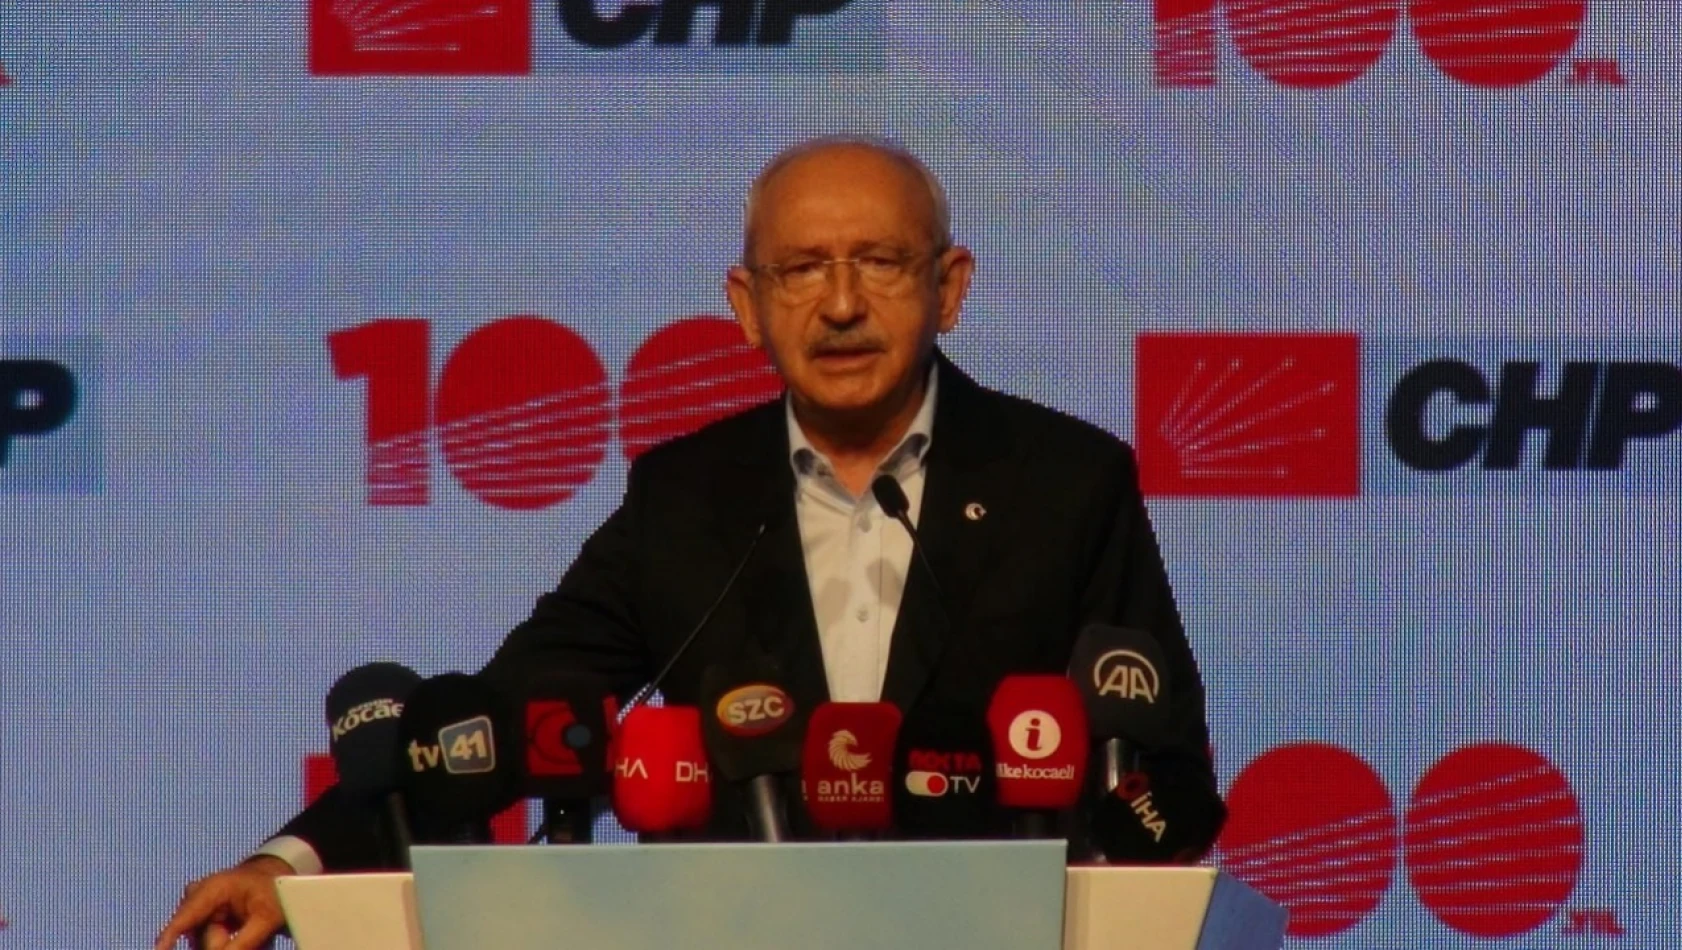 Kılıçdaroğlu'ndan partililere uyarı